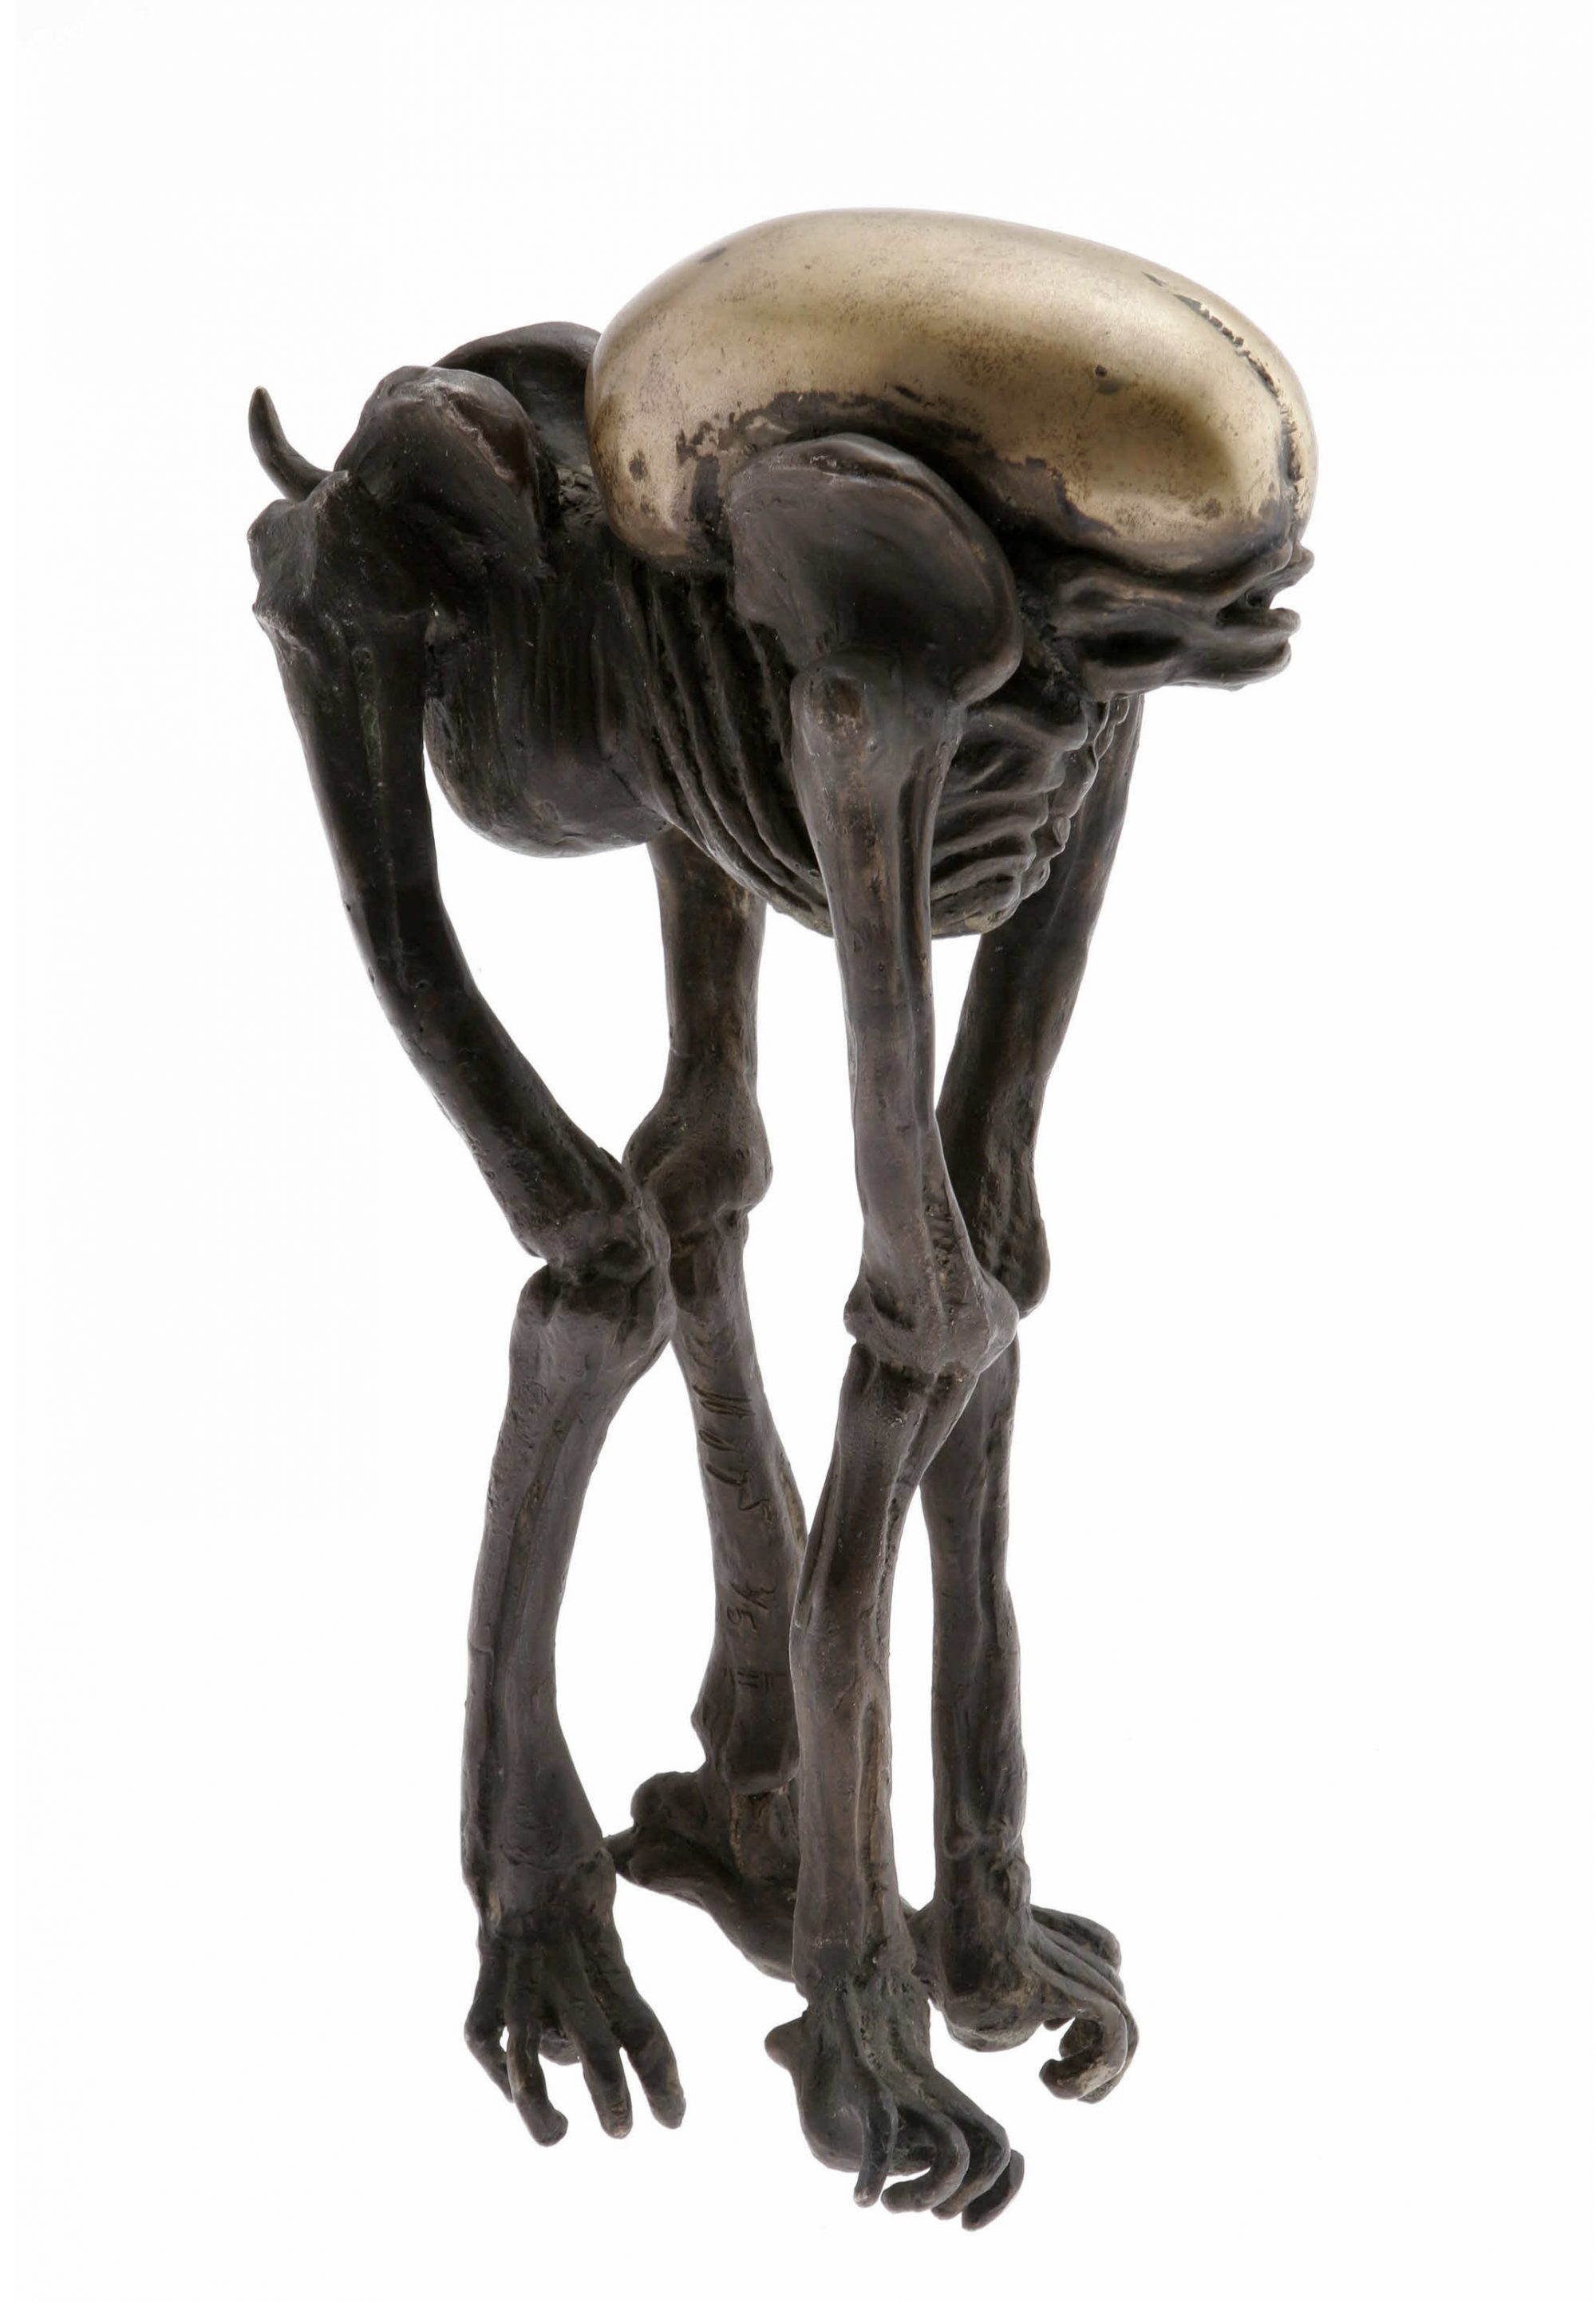 H. R. Giger baby Alien III sculpture